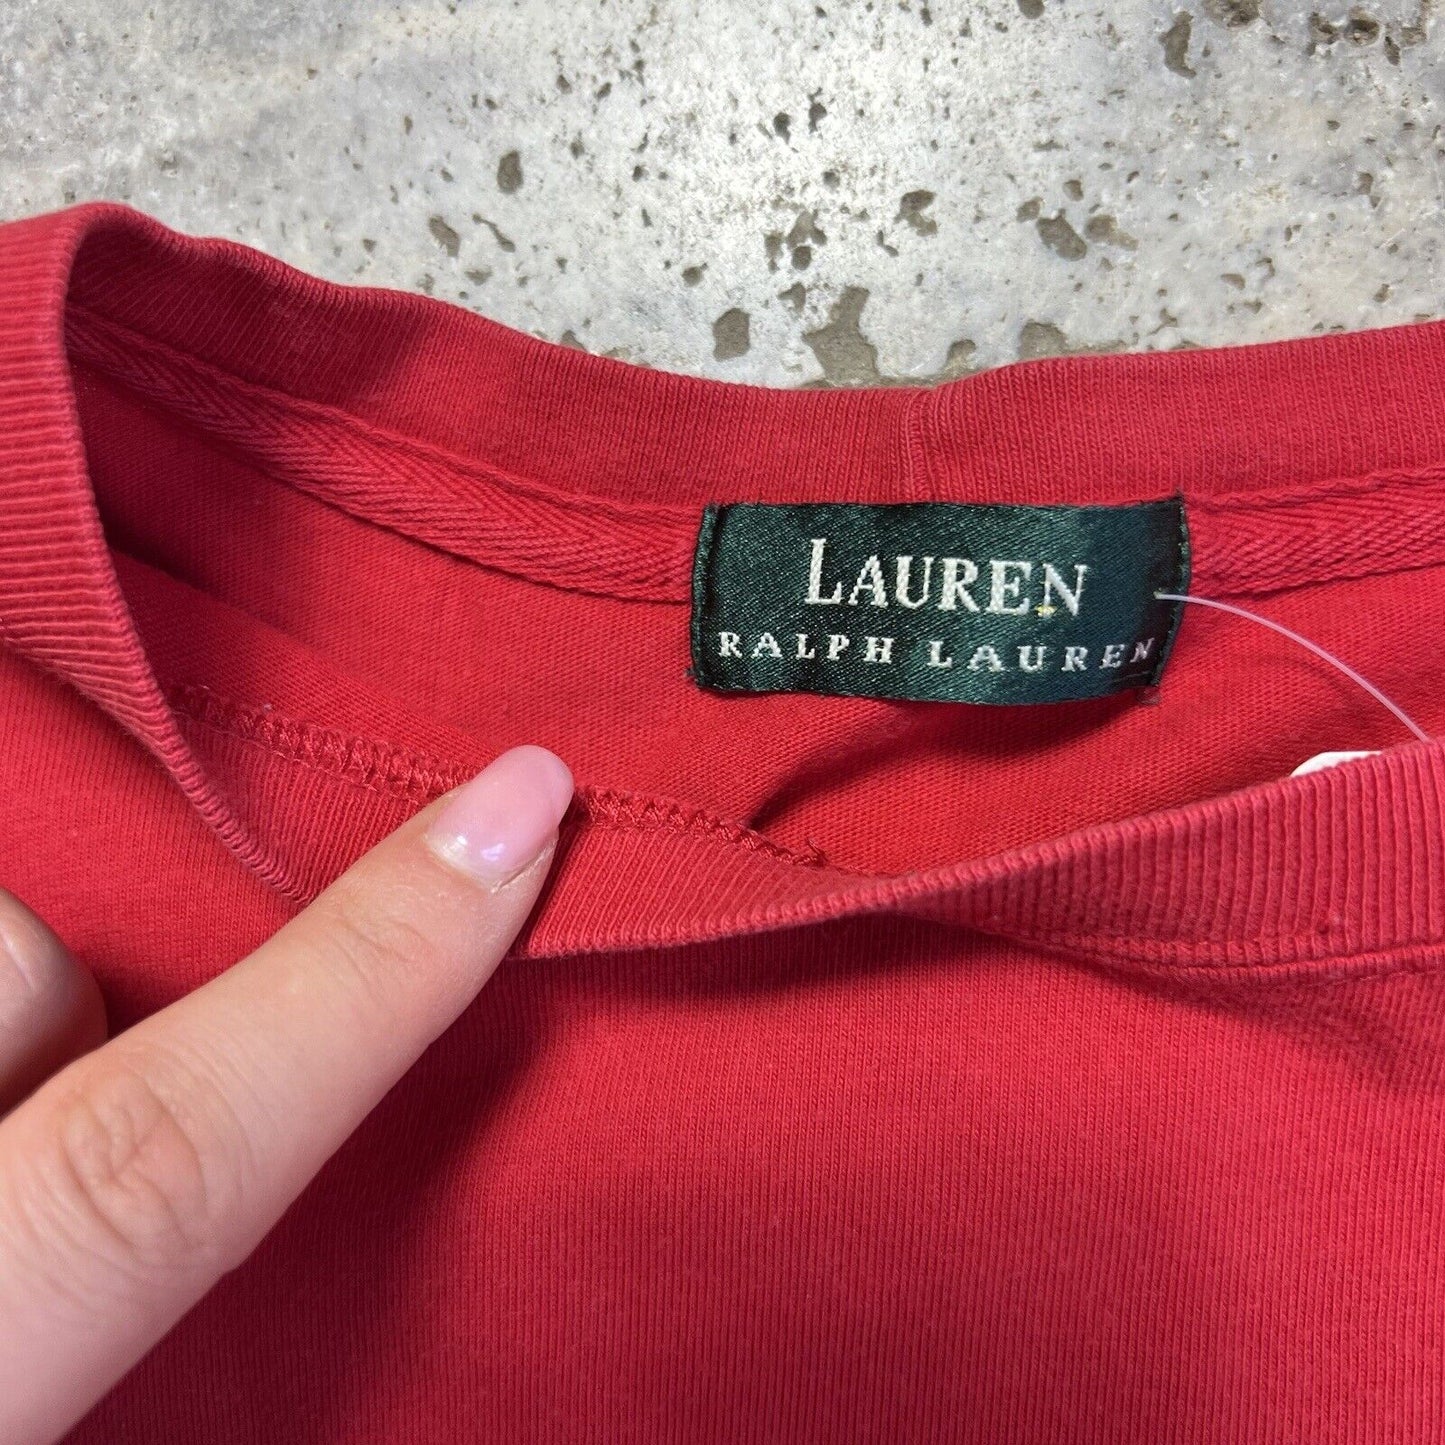 Lauren Ralph Lauren T Shirt Women’s Medium